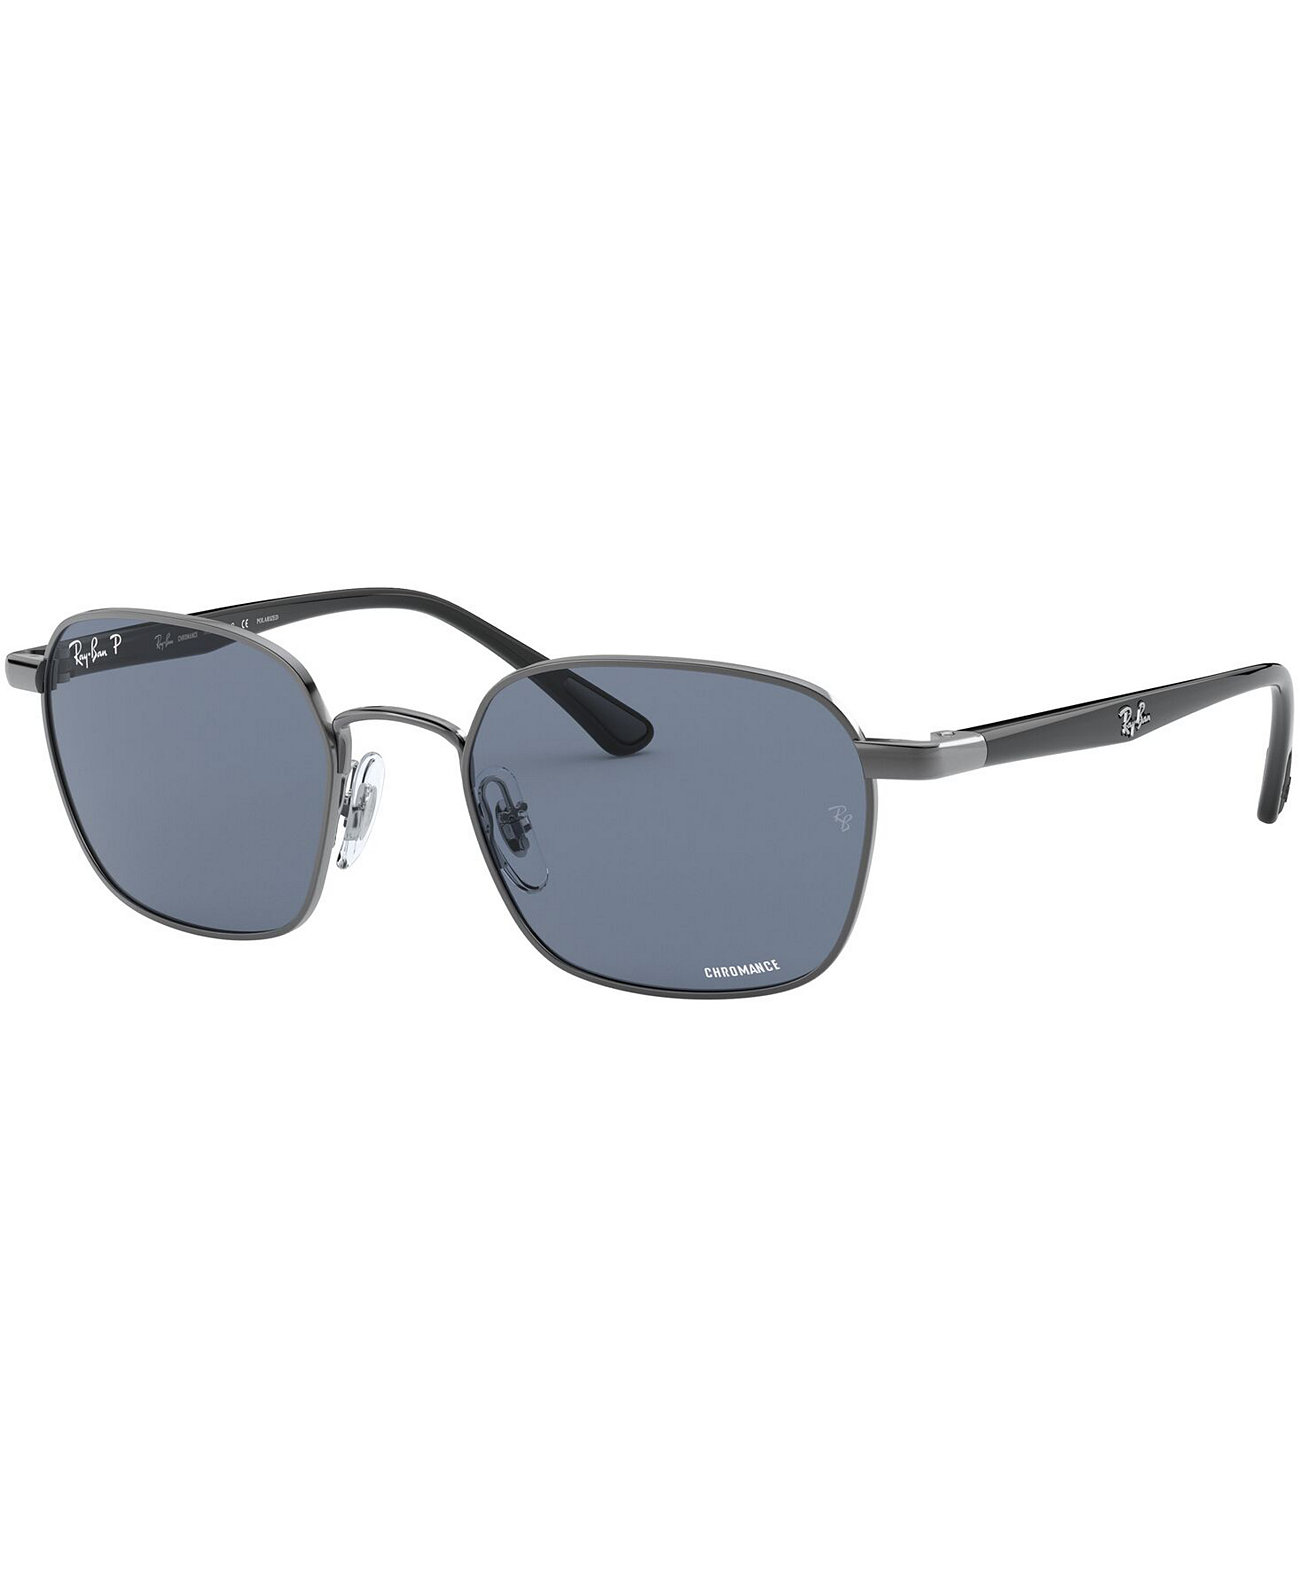 Мужские поляризованные солнцезащитные очки, RB3664CH Ray-Ban